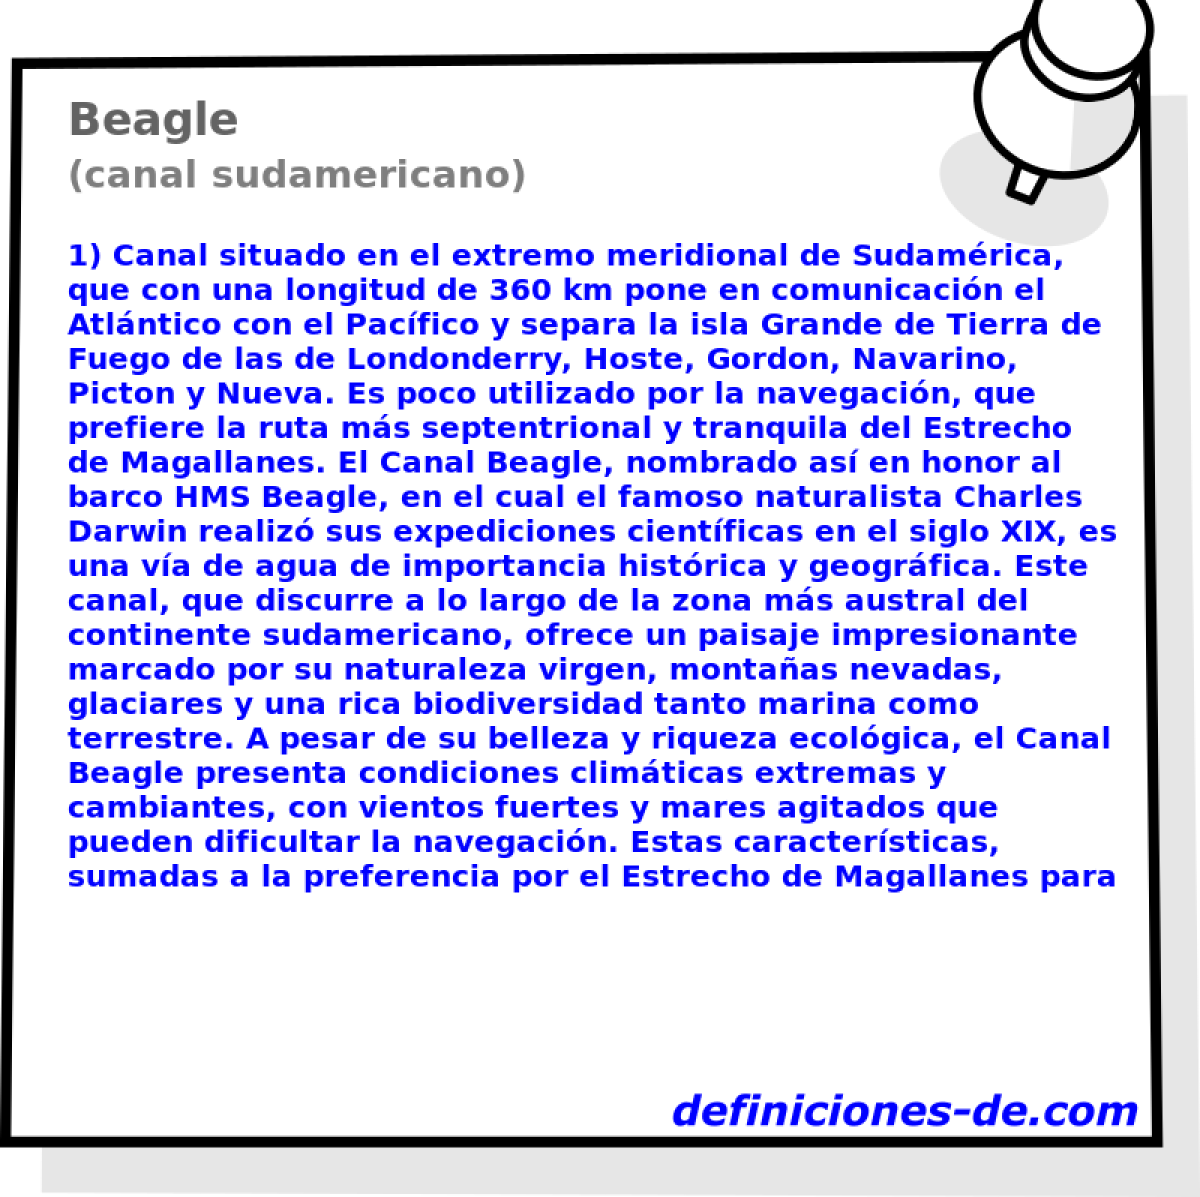 Beagle (canal sudamericano)